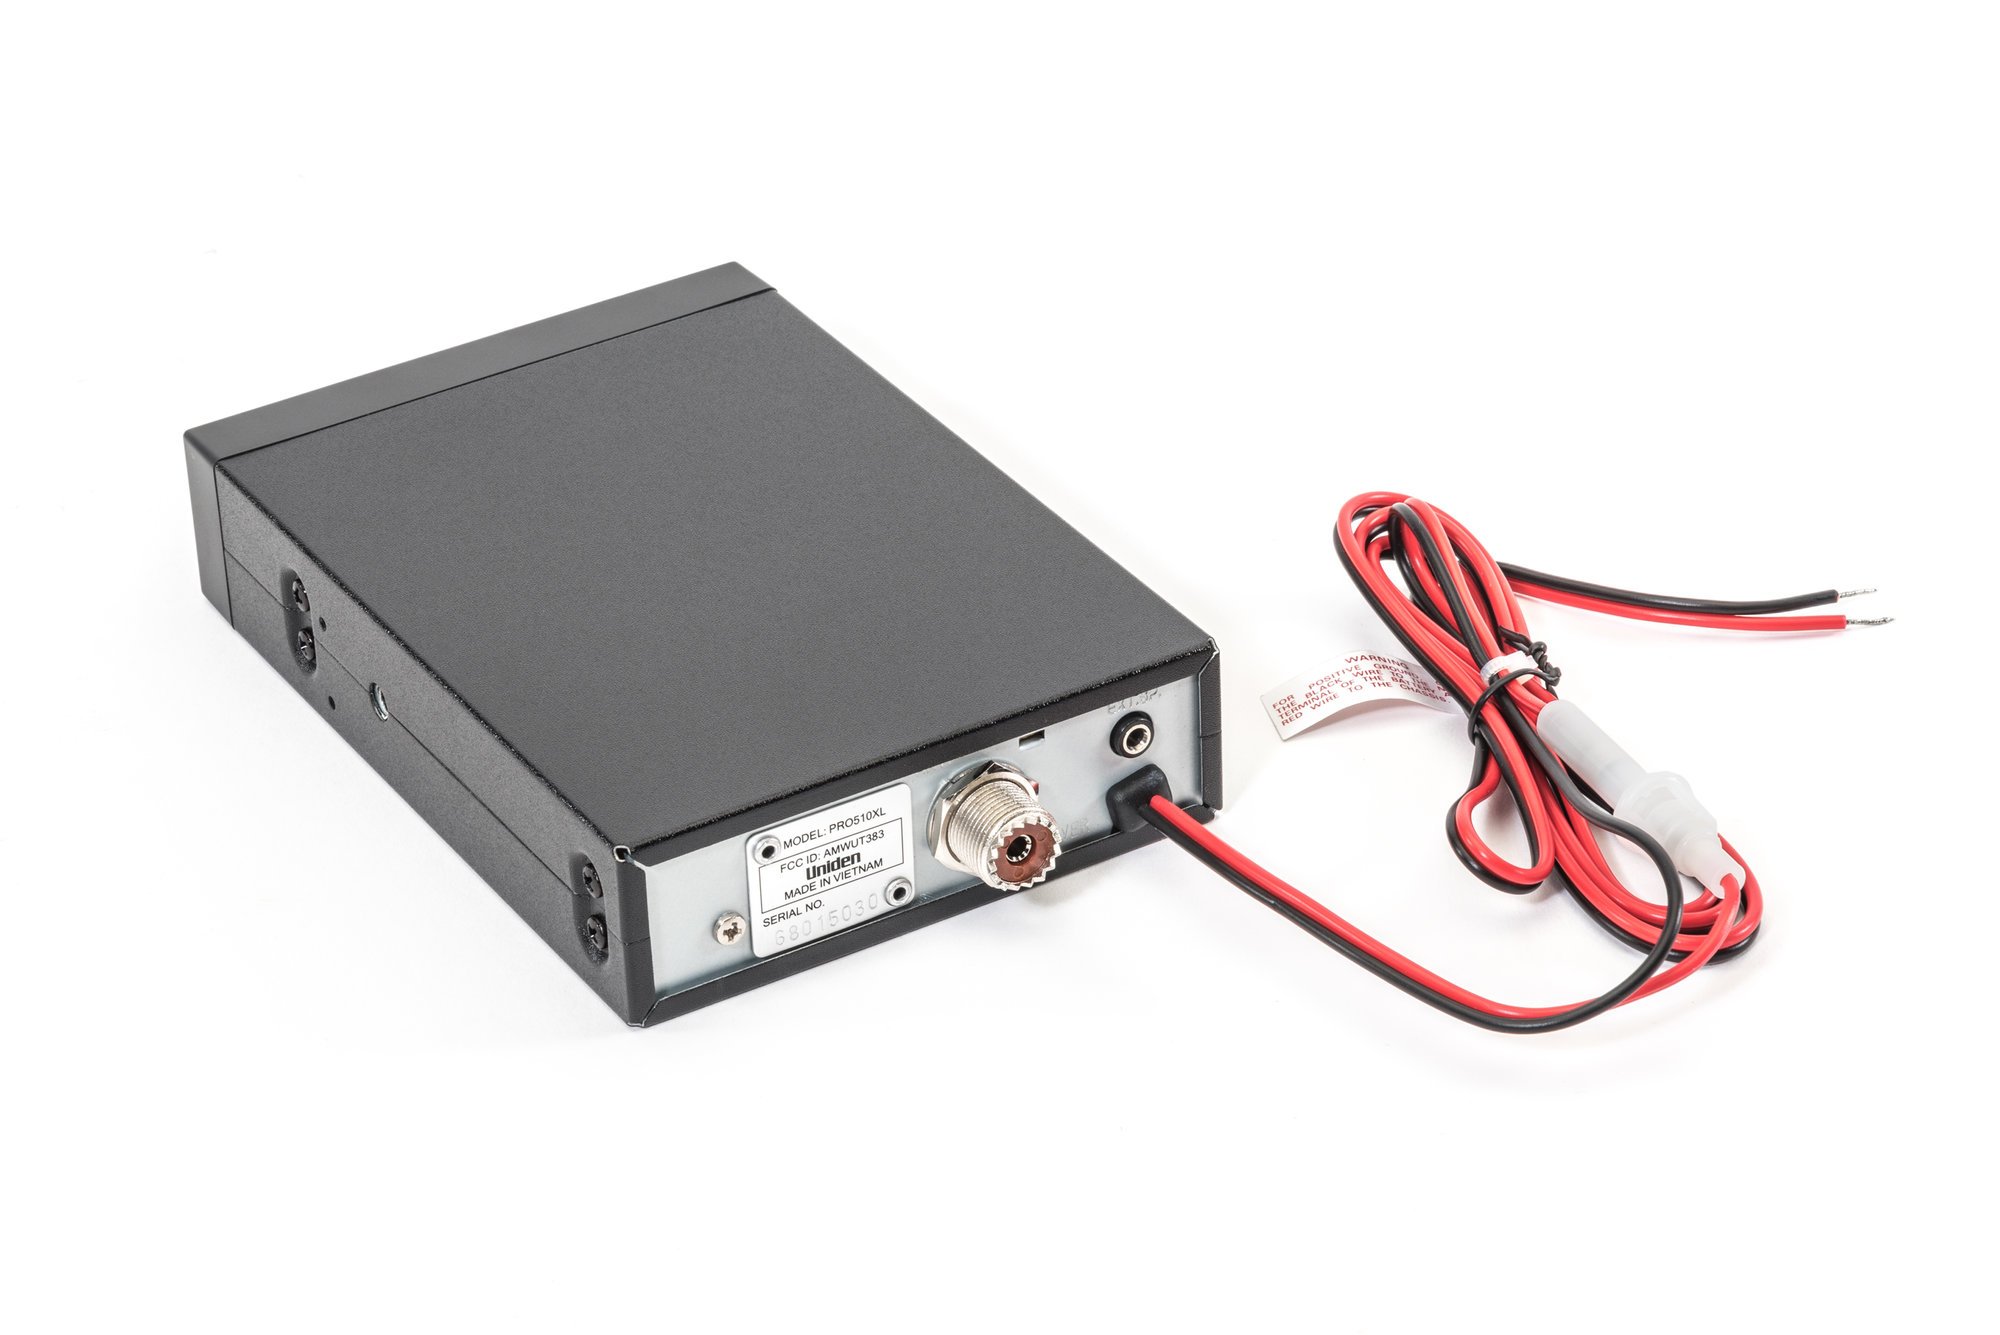 Uniden Pro 510XL 40 Channel Compact Mobile CB Radio | Quadratec